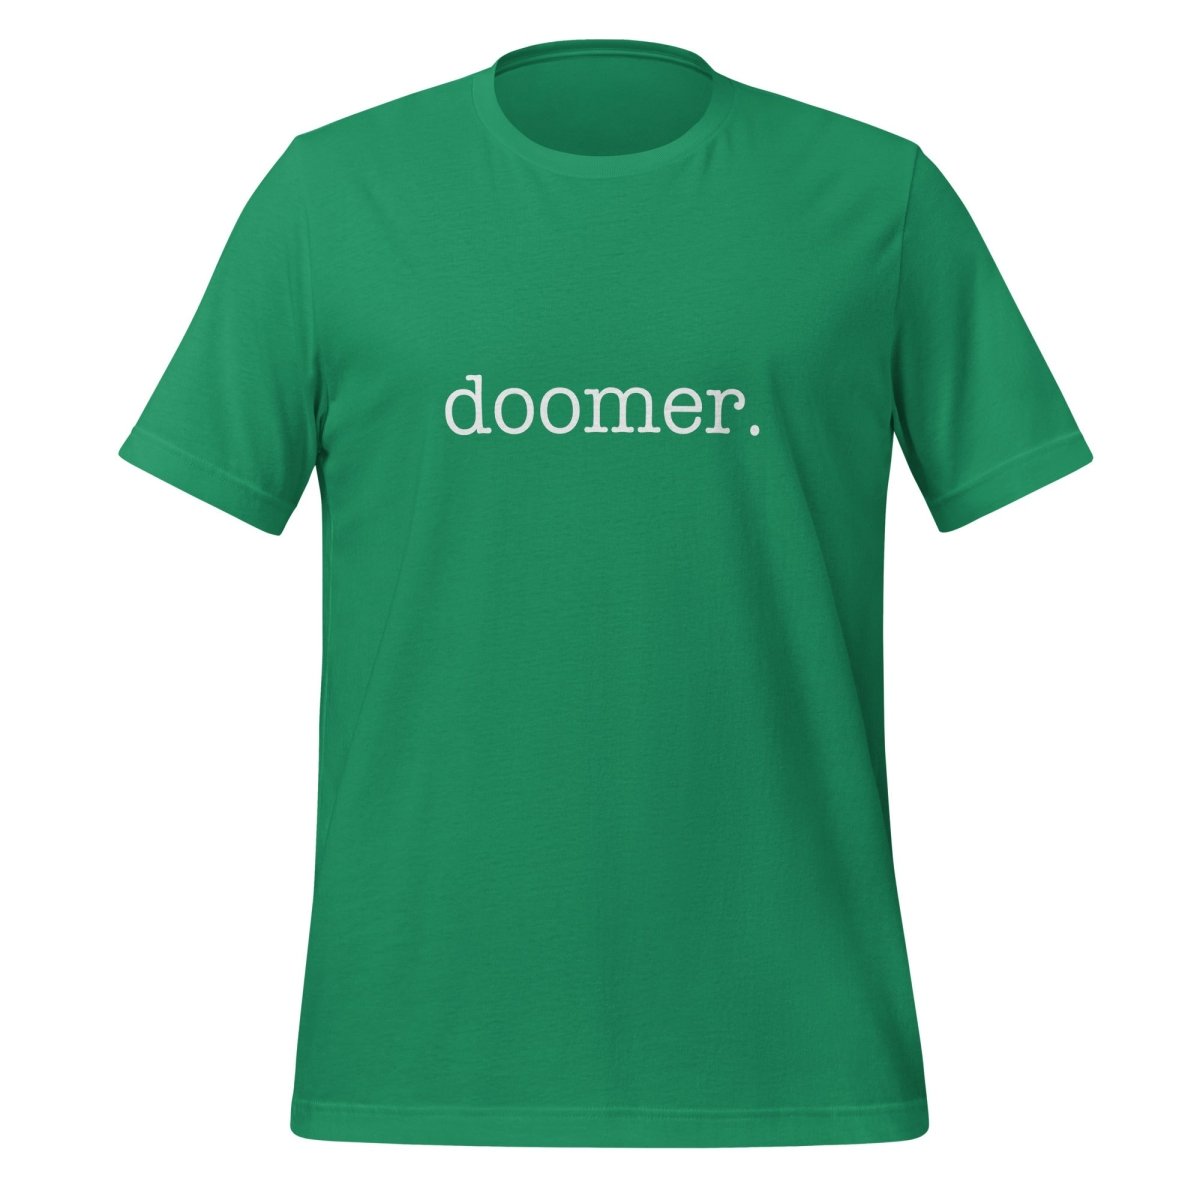 doomer. T - Shirt 1 (unisex) - Kelly - AI Store